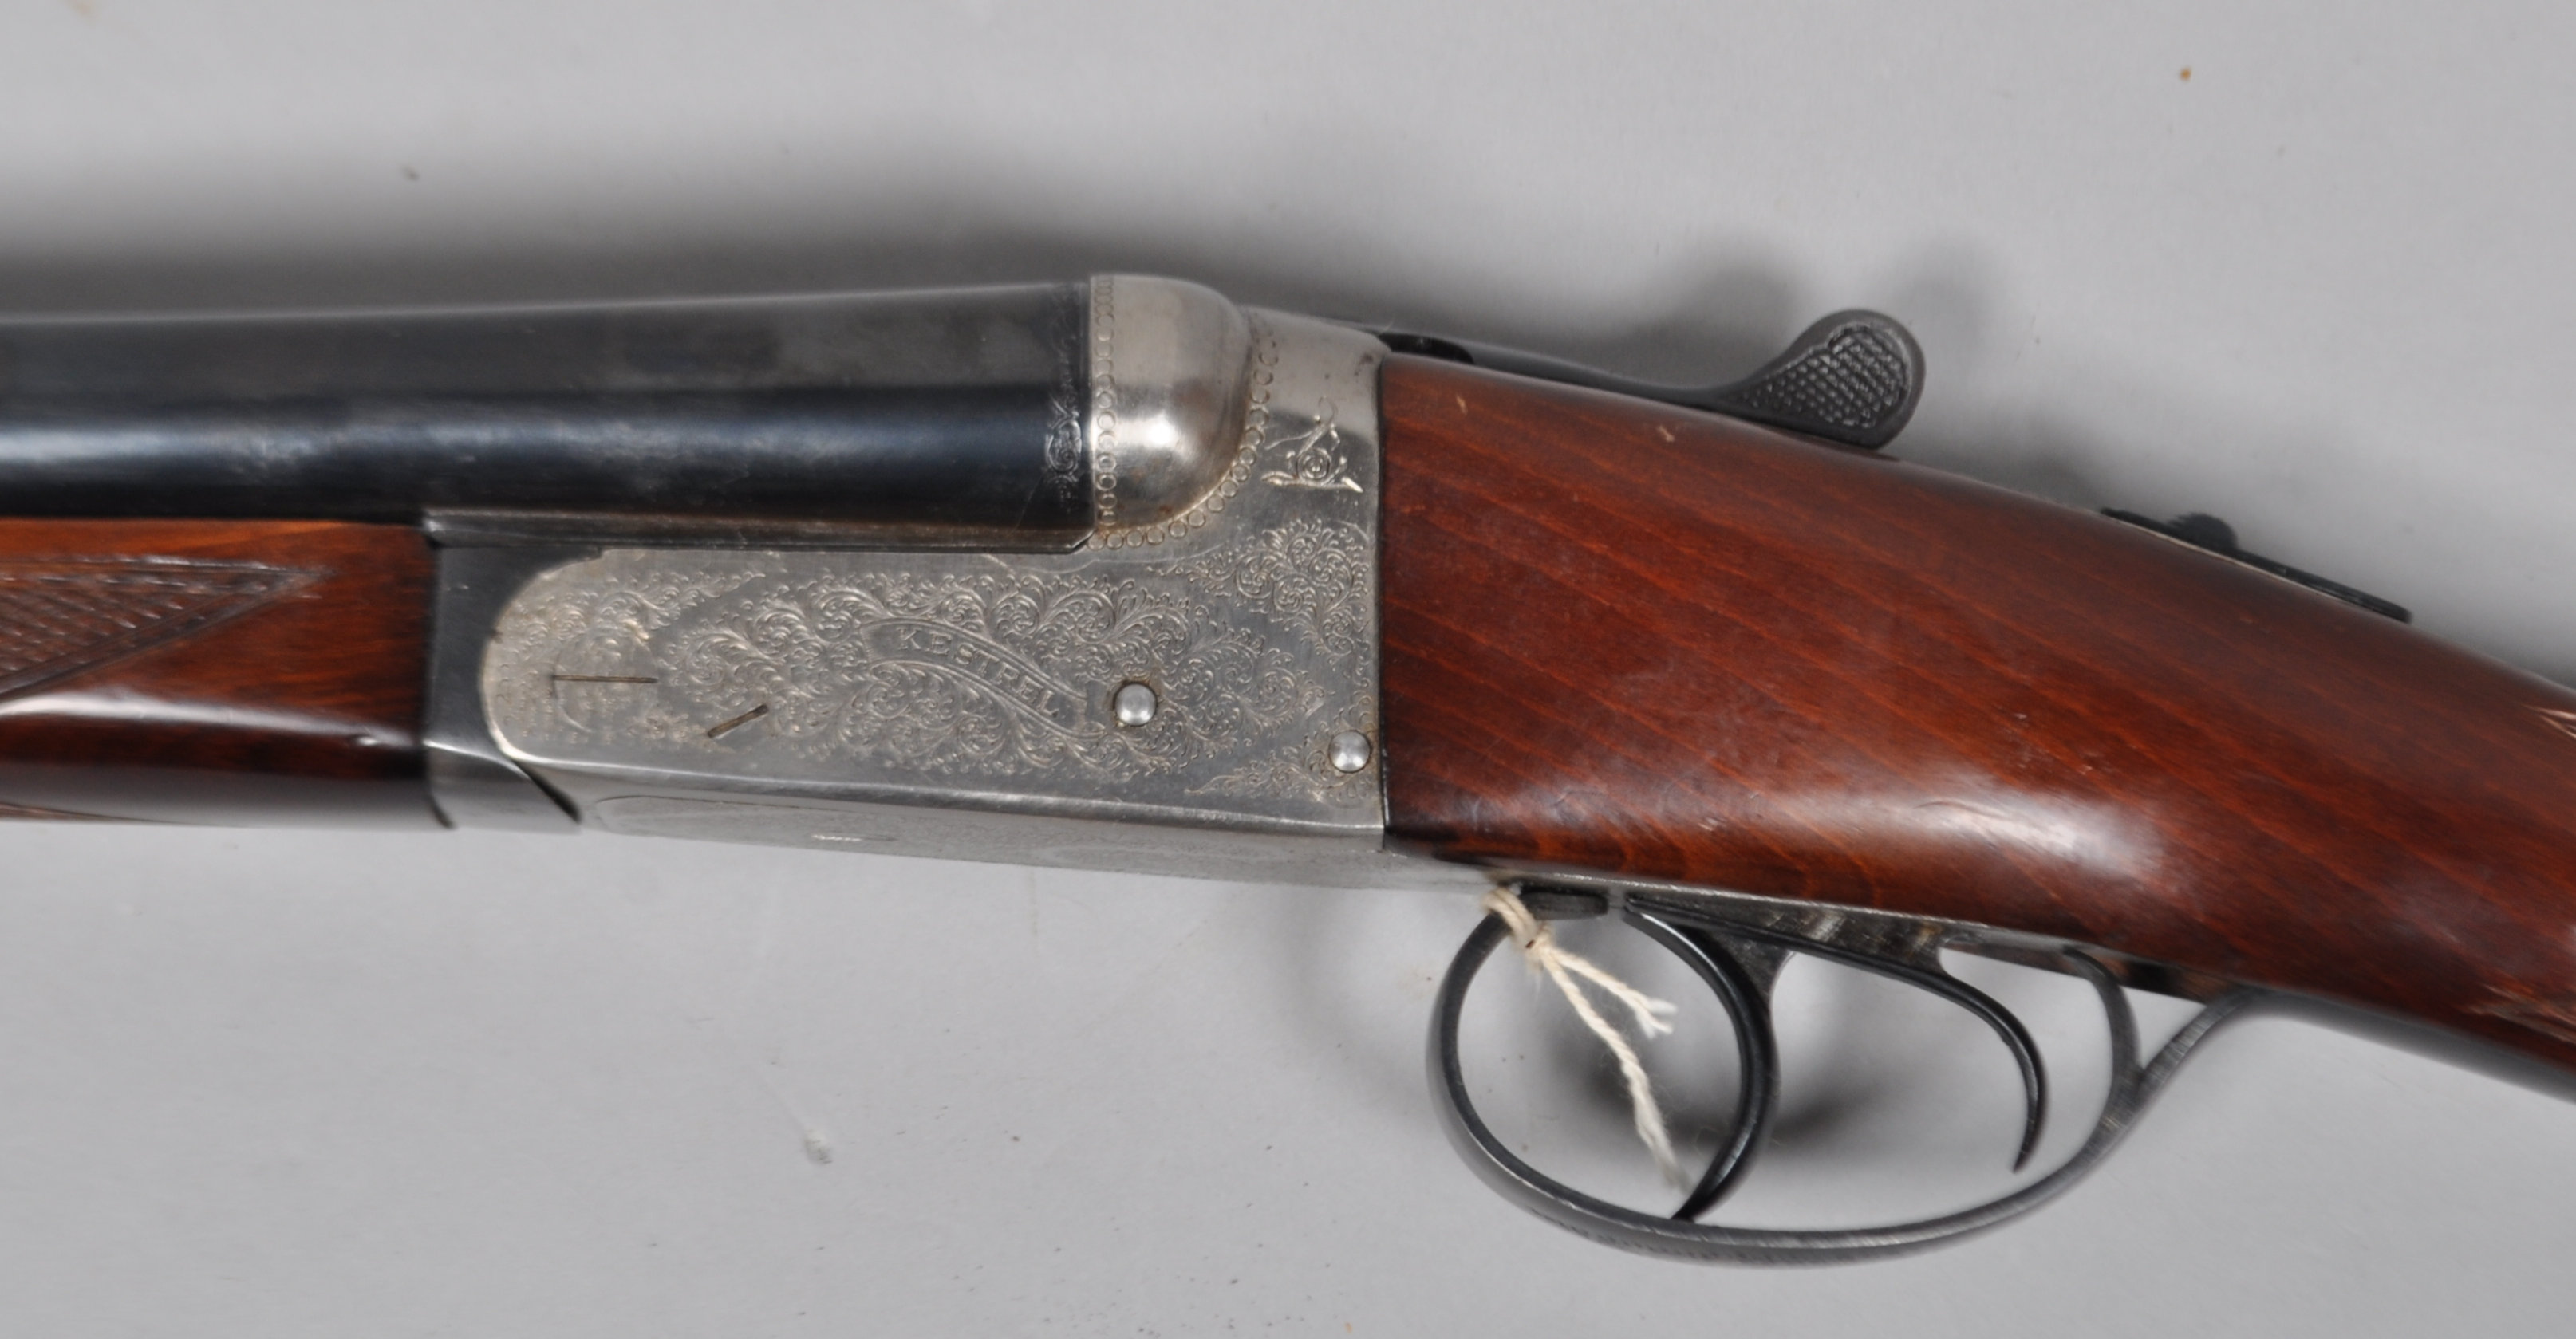 A kestrel doubel barrel 20 bore shotgun (317985) - Image 5 of 6